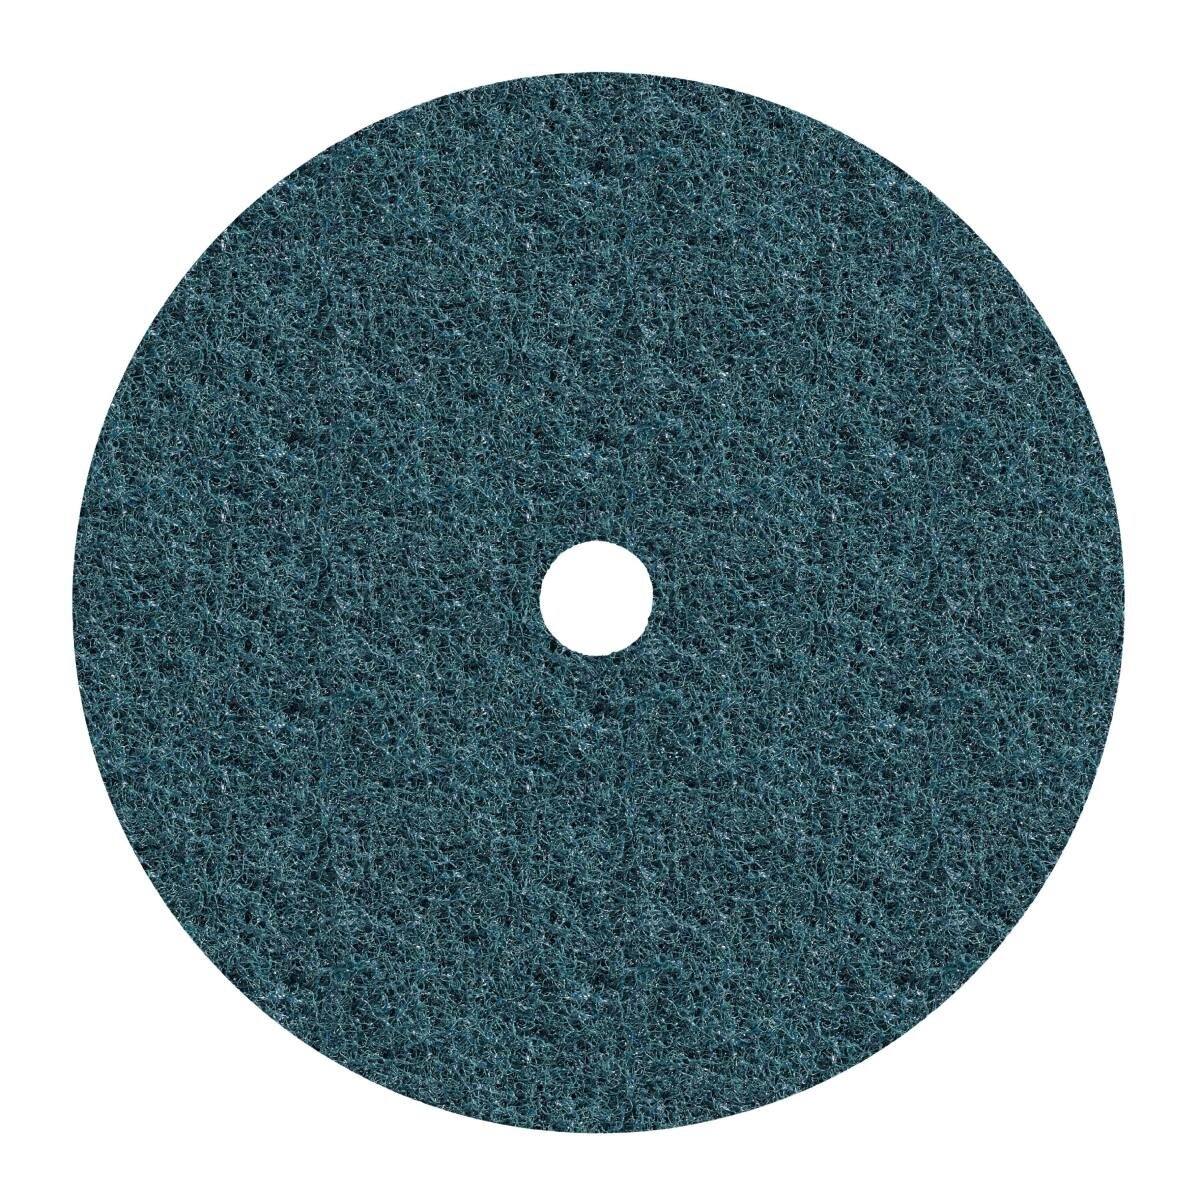 3M Scotch-Brite disco no tejido SC-DH con centrado, azul, 115 mm, 22 mm, A, muy fino 60983